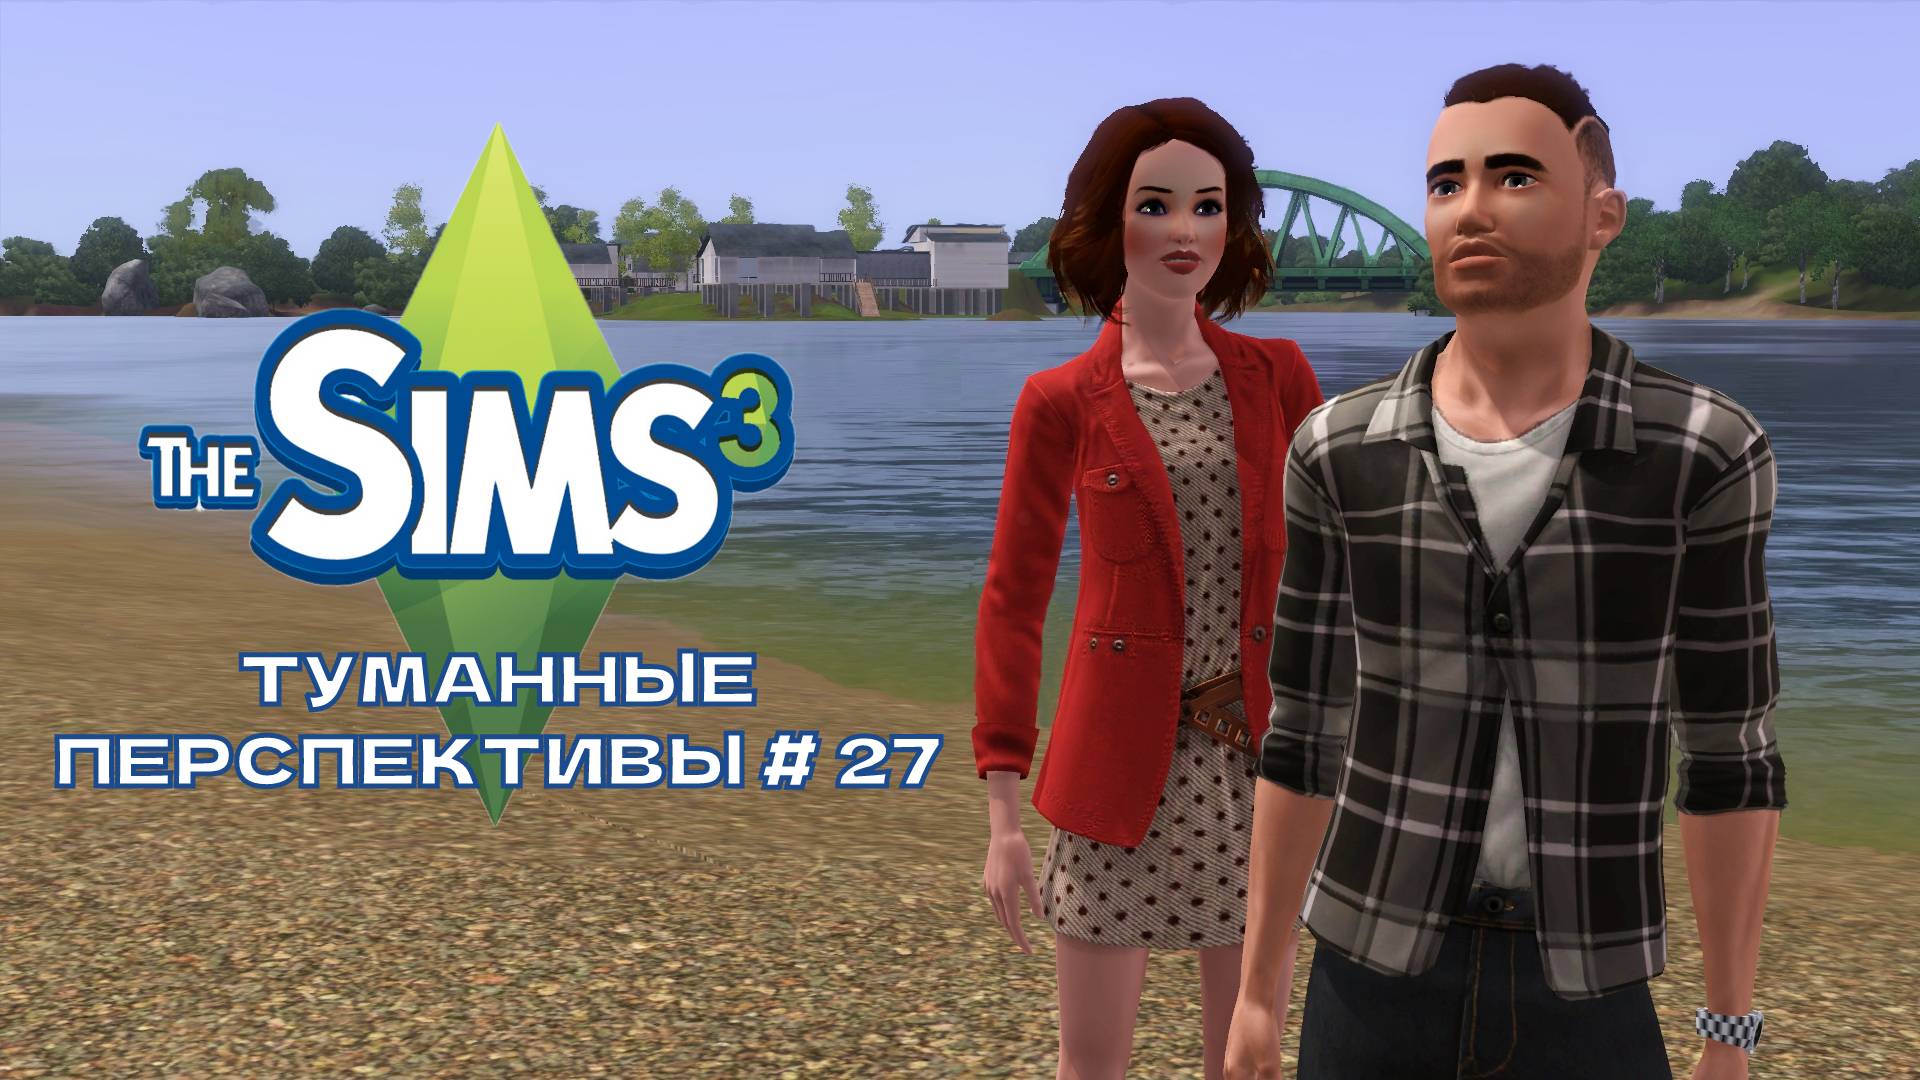 The Sims 3. Туманные перспективы # 27. Как Майкл мирился с соседом